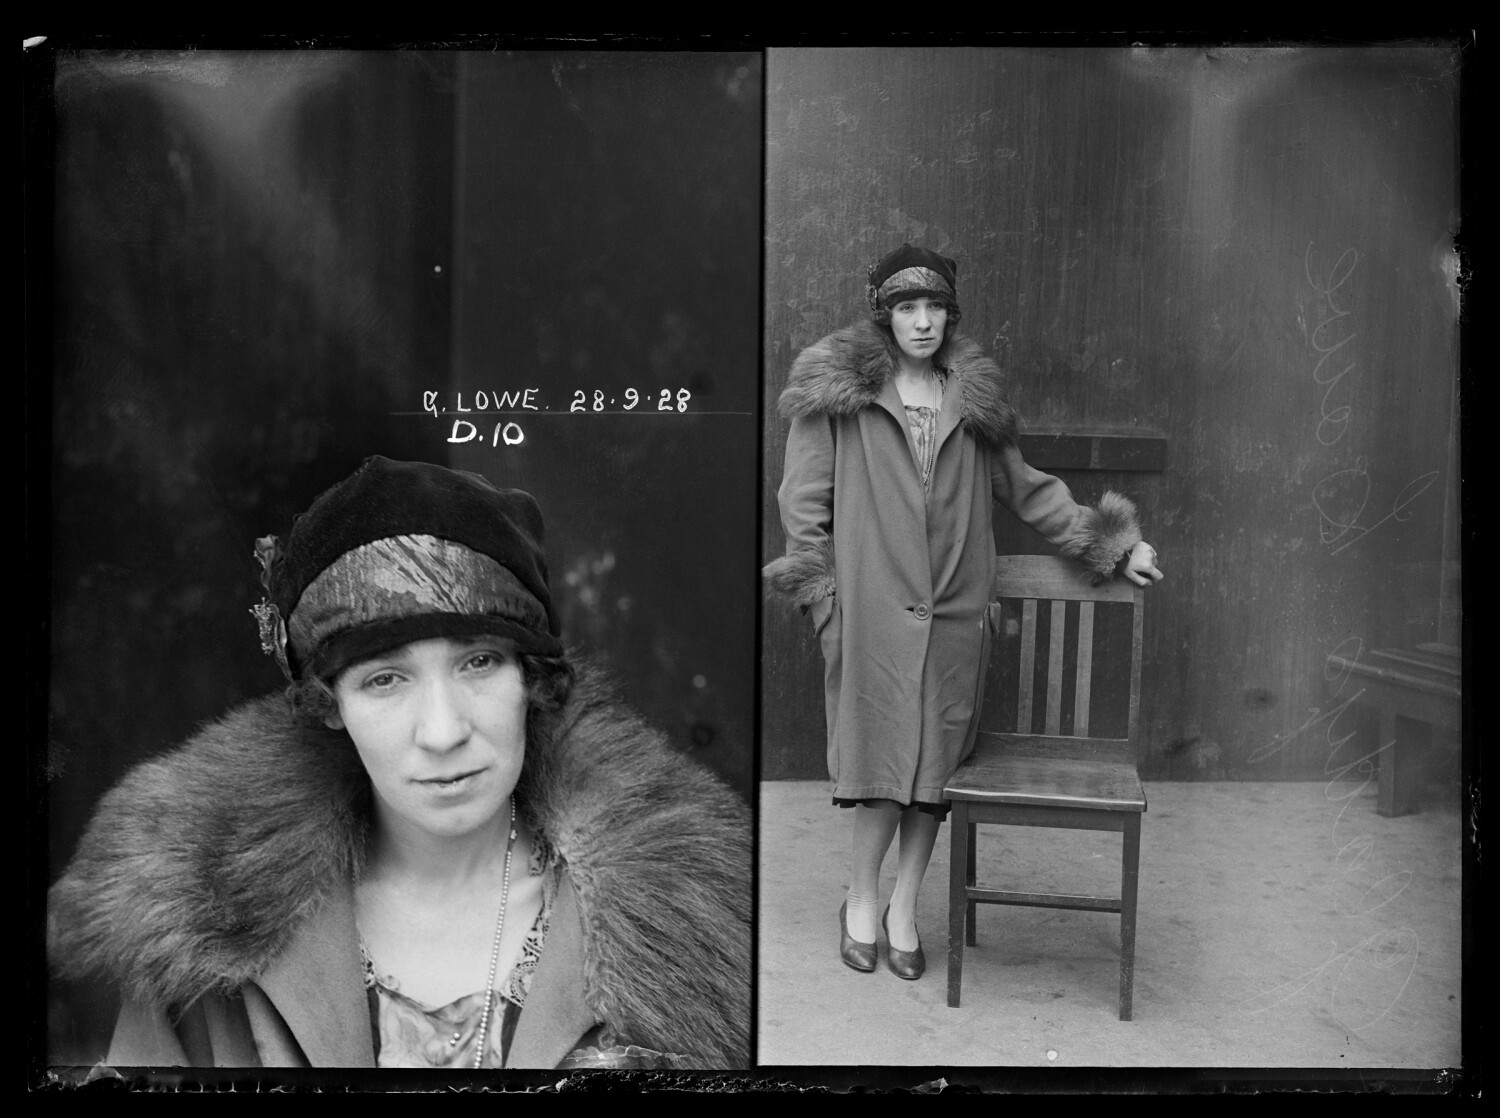 Глэдис Лоу, поймана с опиумом во время полицейского рейда, 1928 год. Архив судебной фотографии полиции Нового Южного Уэльса